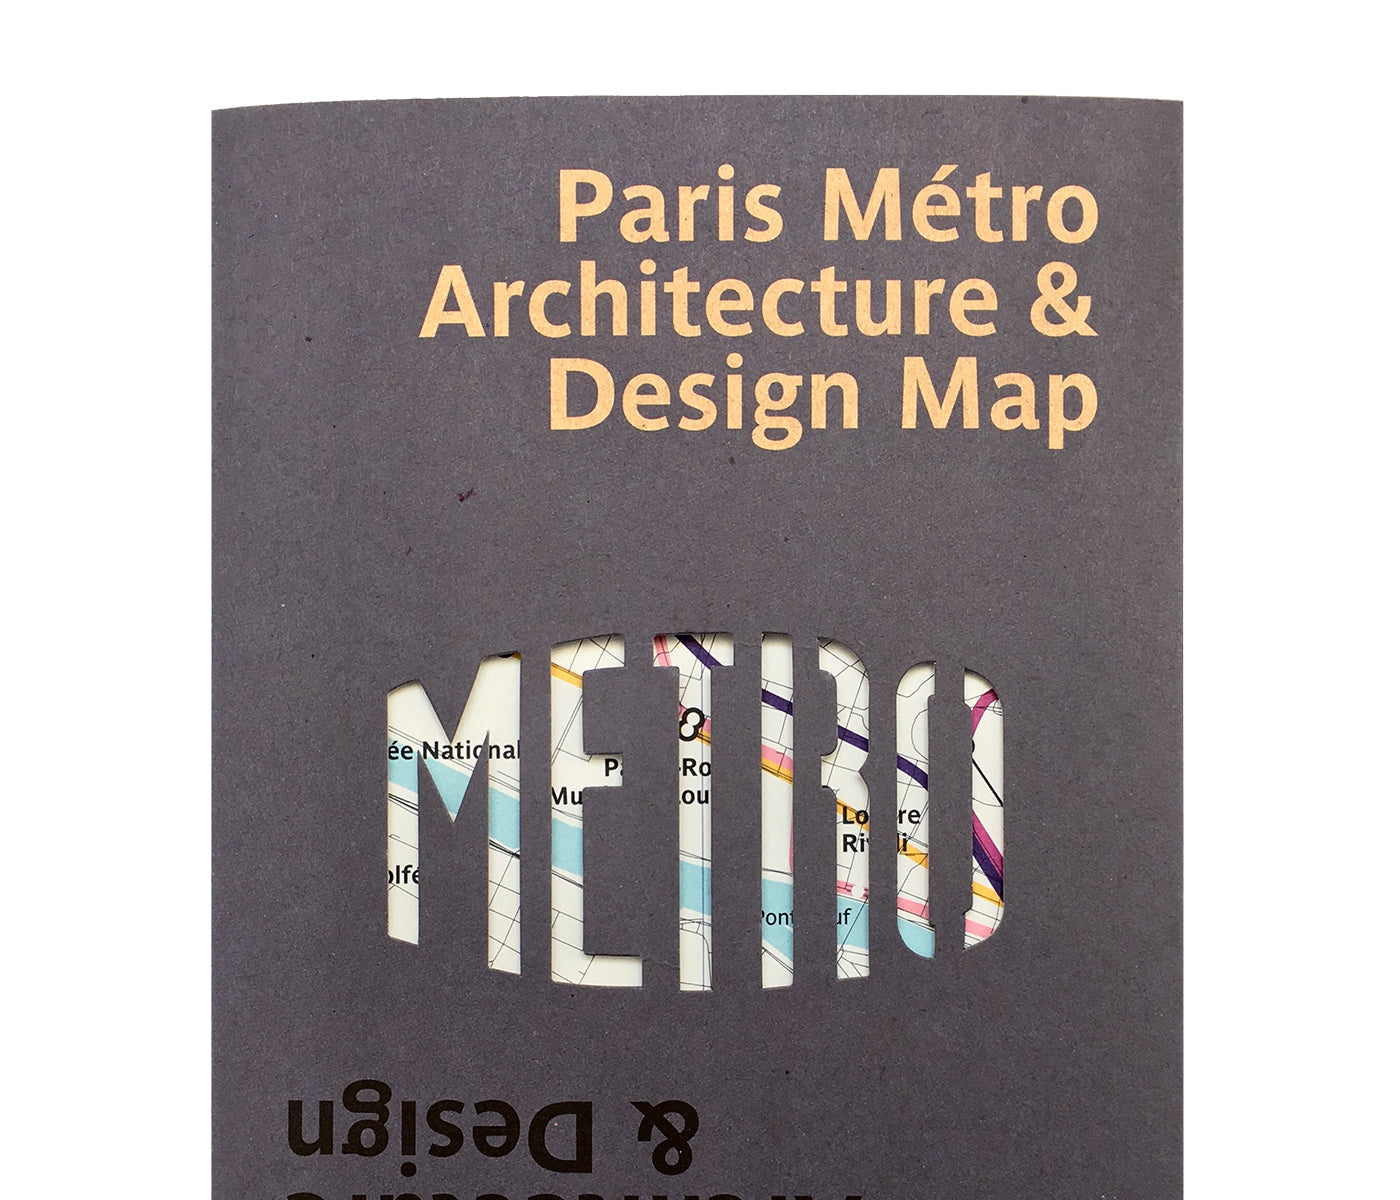 Paris Metro Architecture & Design Map / Plan du Métro Parisien : Architecture & Design